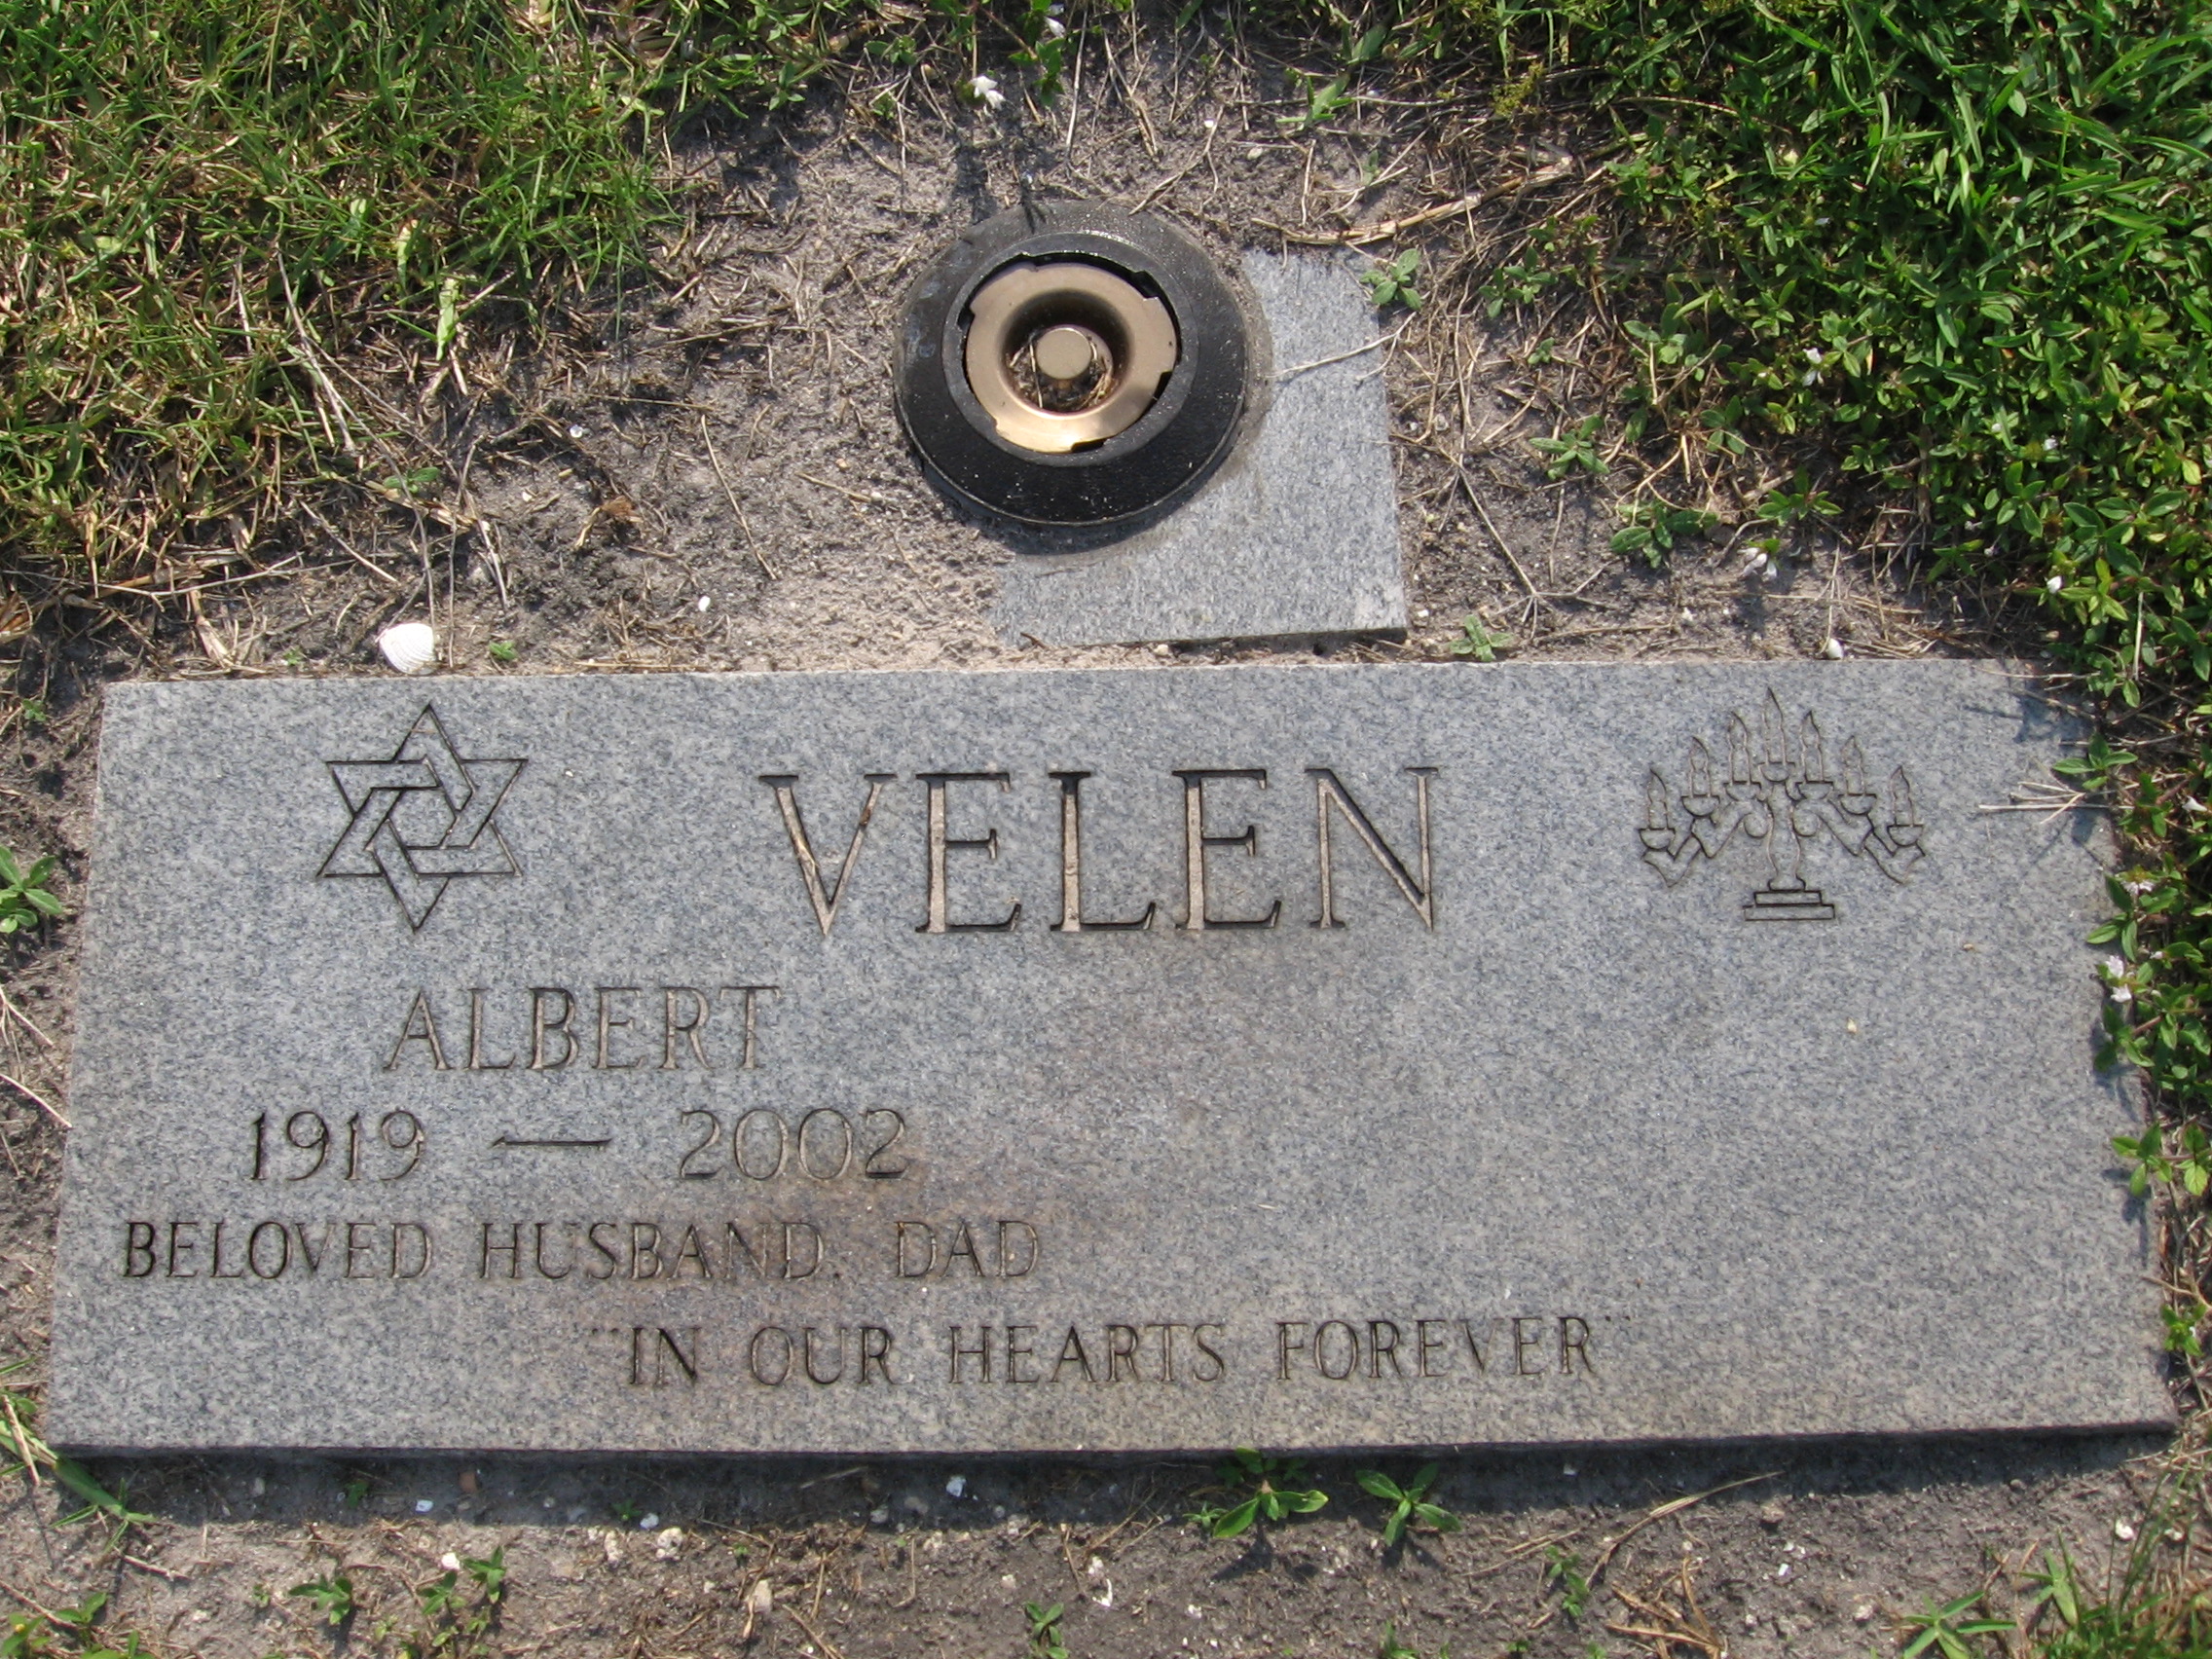 Albert Velen